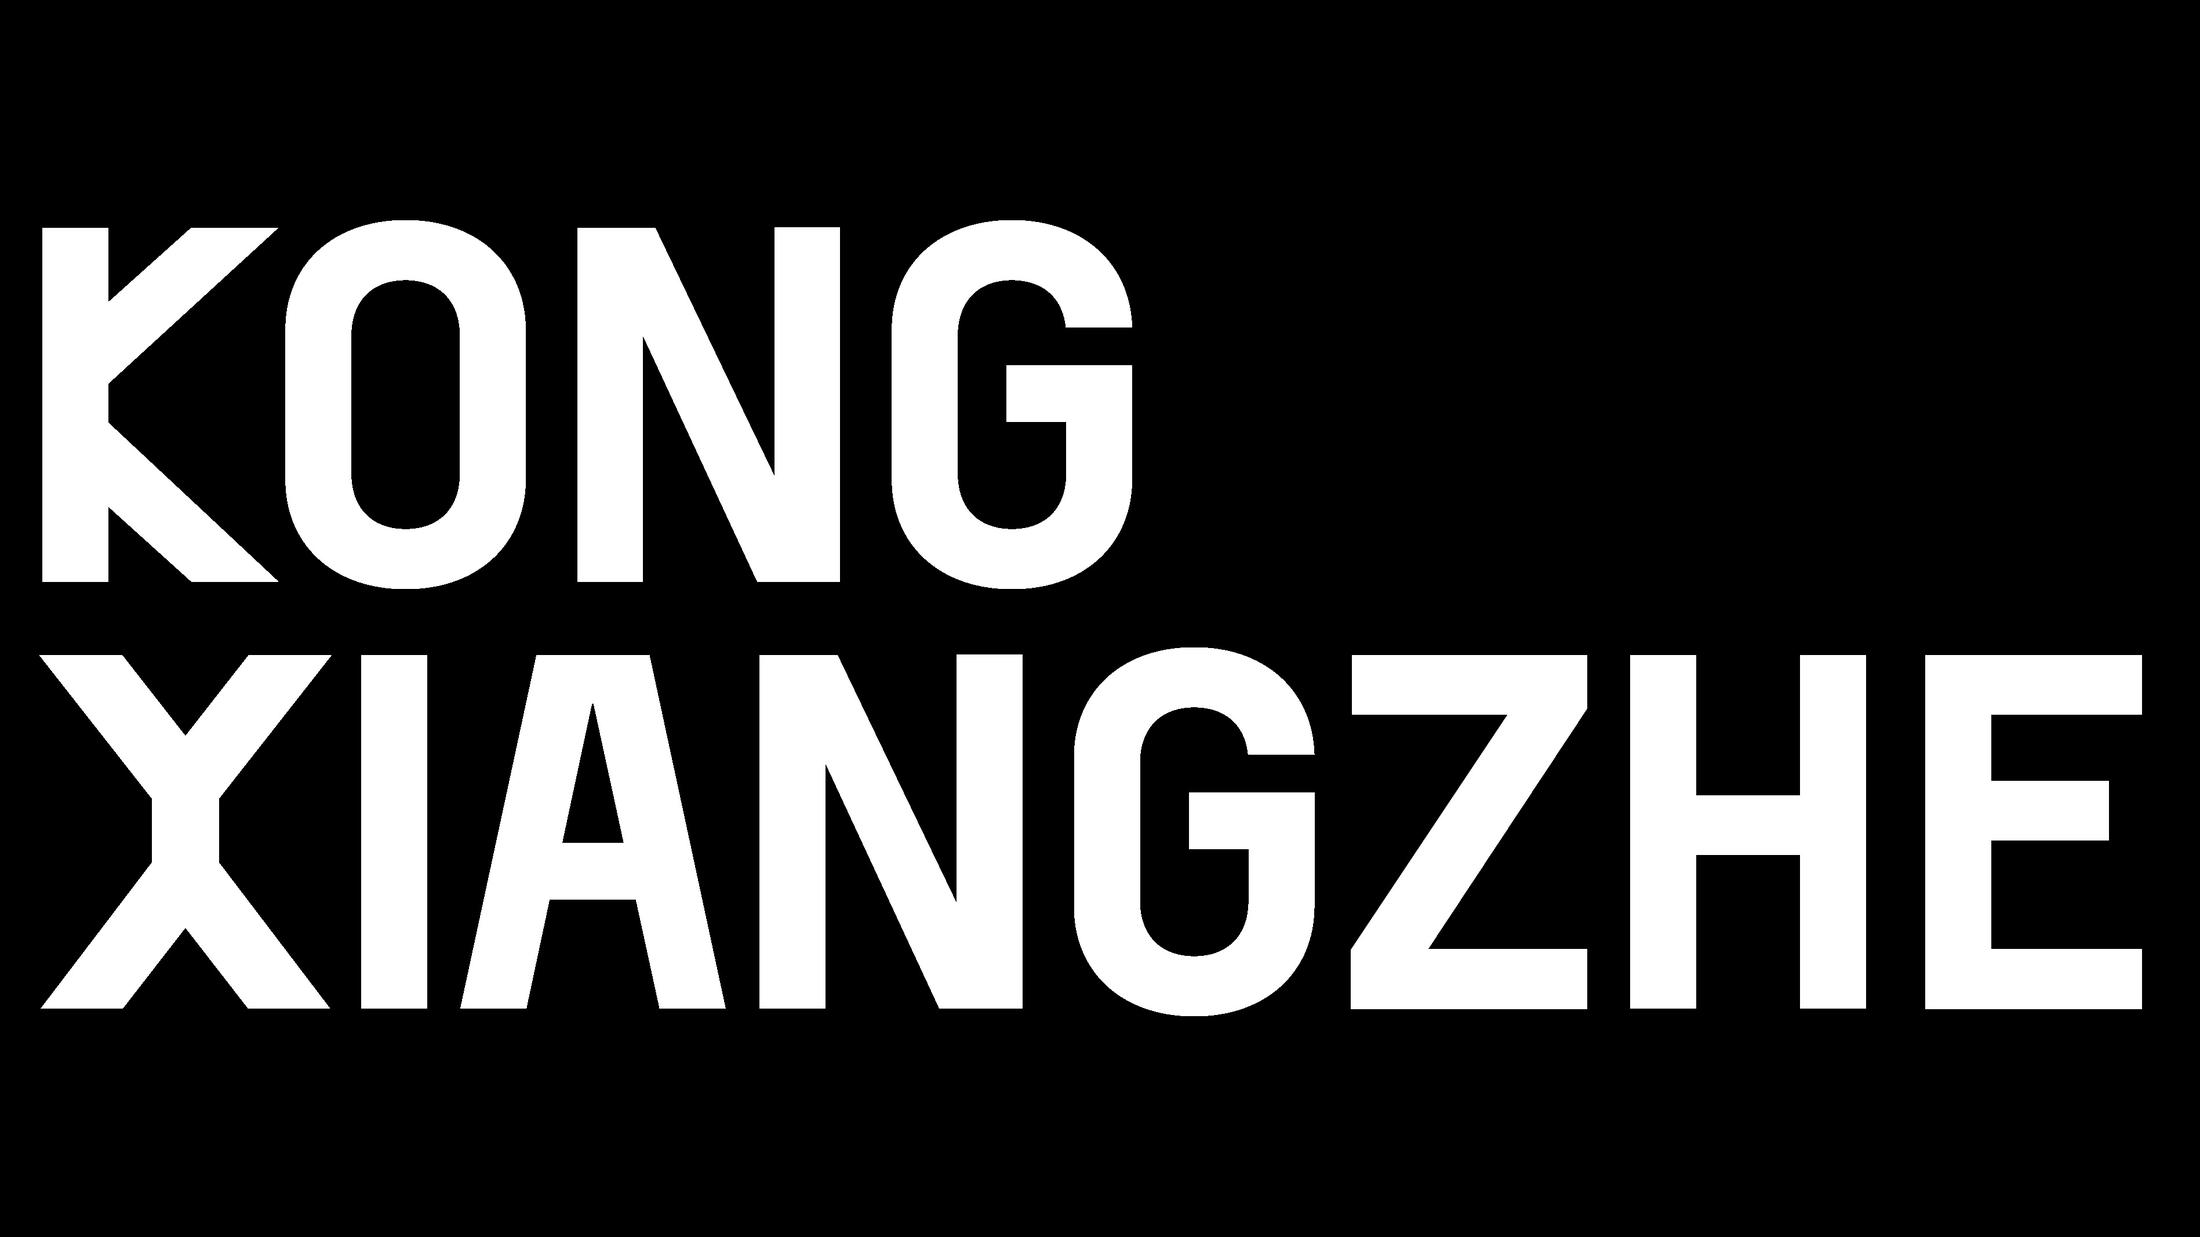 Kong Xiangzhe